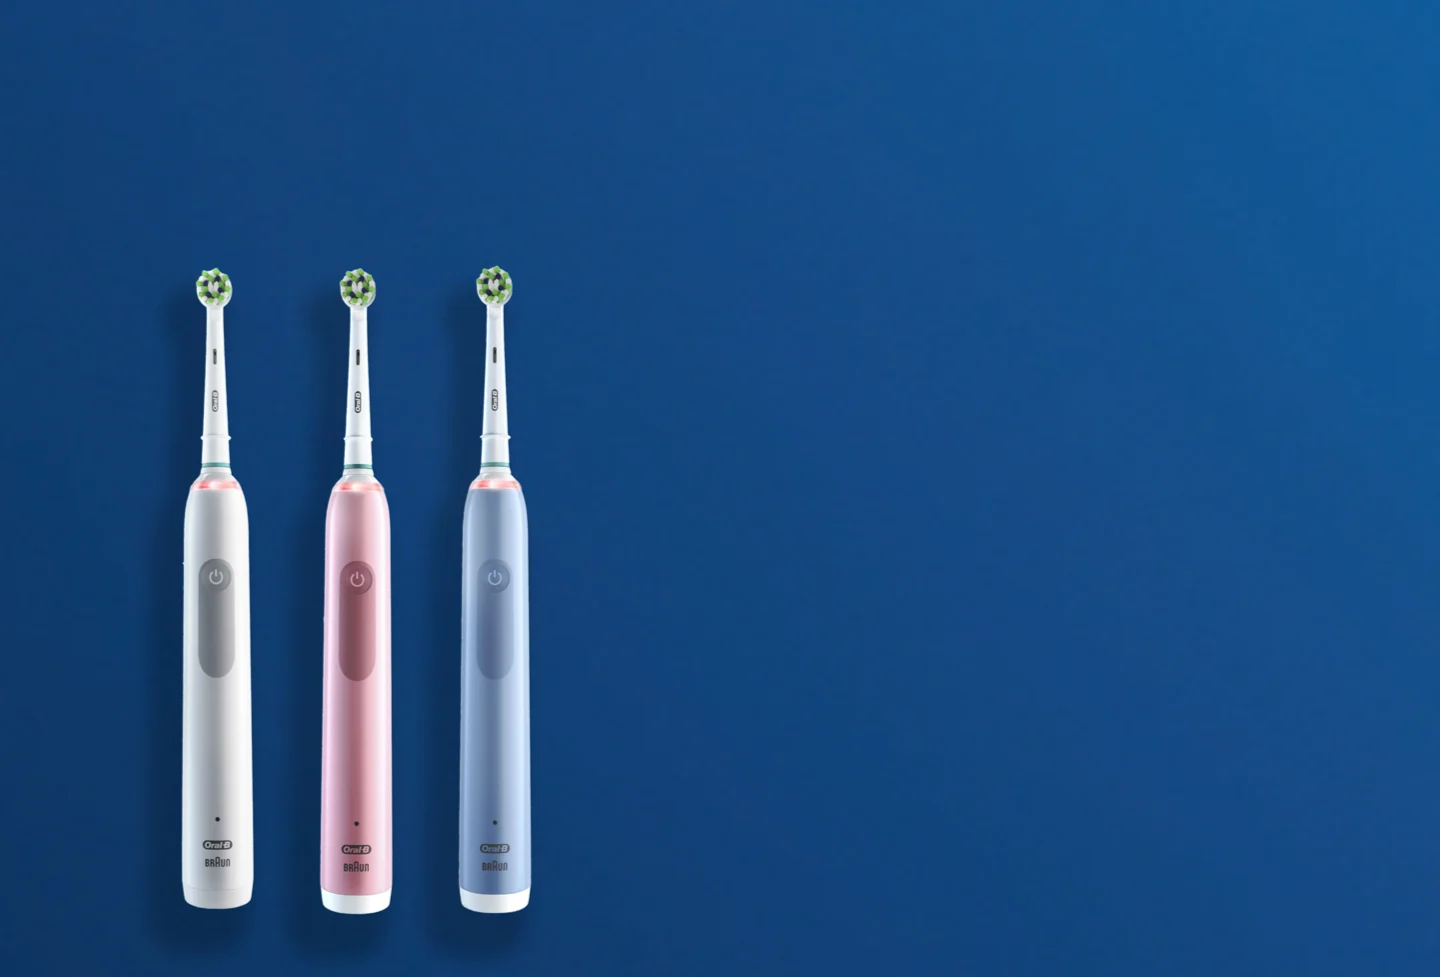 Oral-B Pro cepillo de dientes eléctrico colección